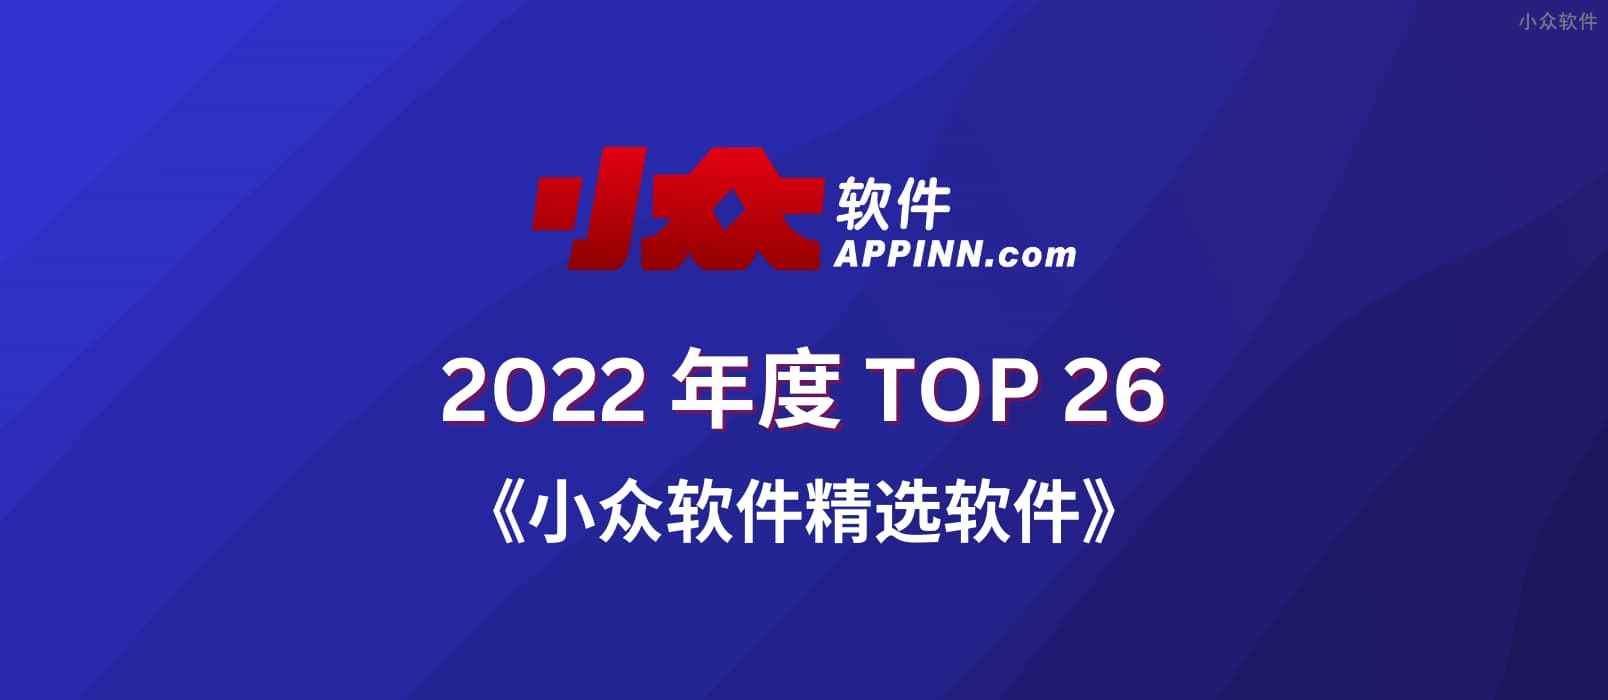 2022 小众软件精选软件 TOP 26【第一部分】